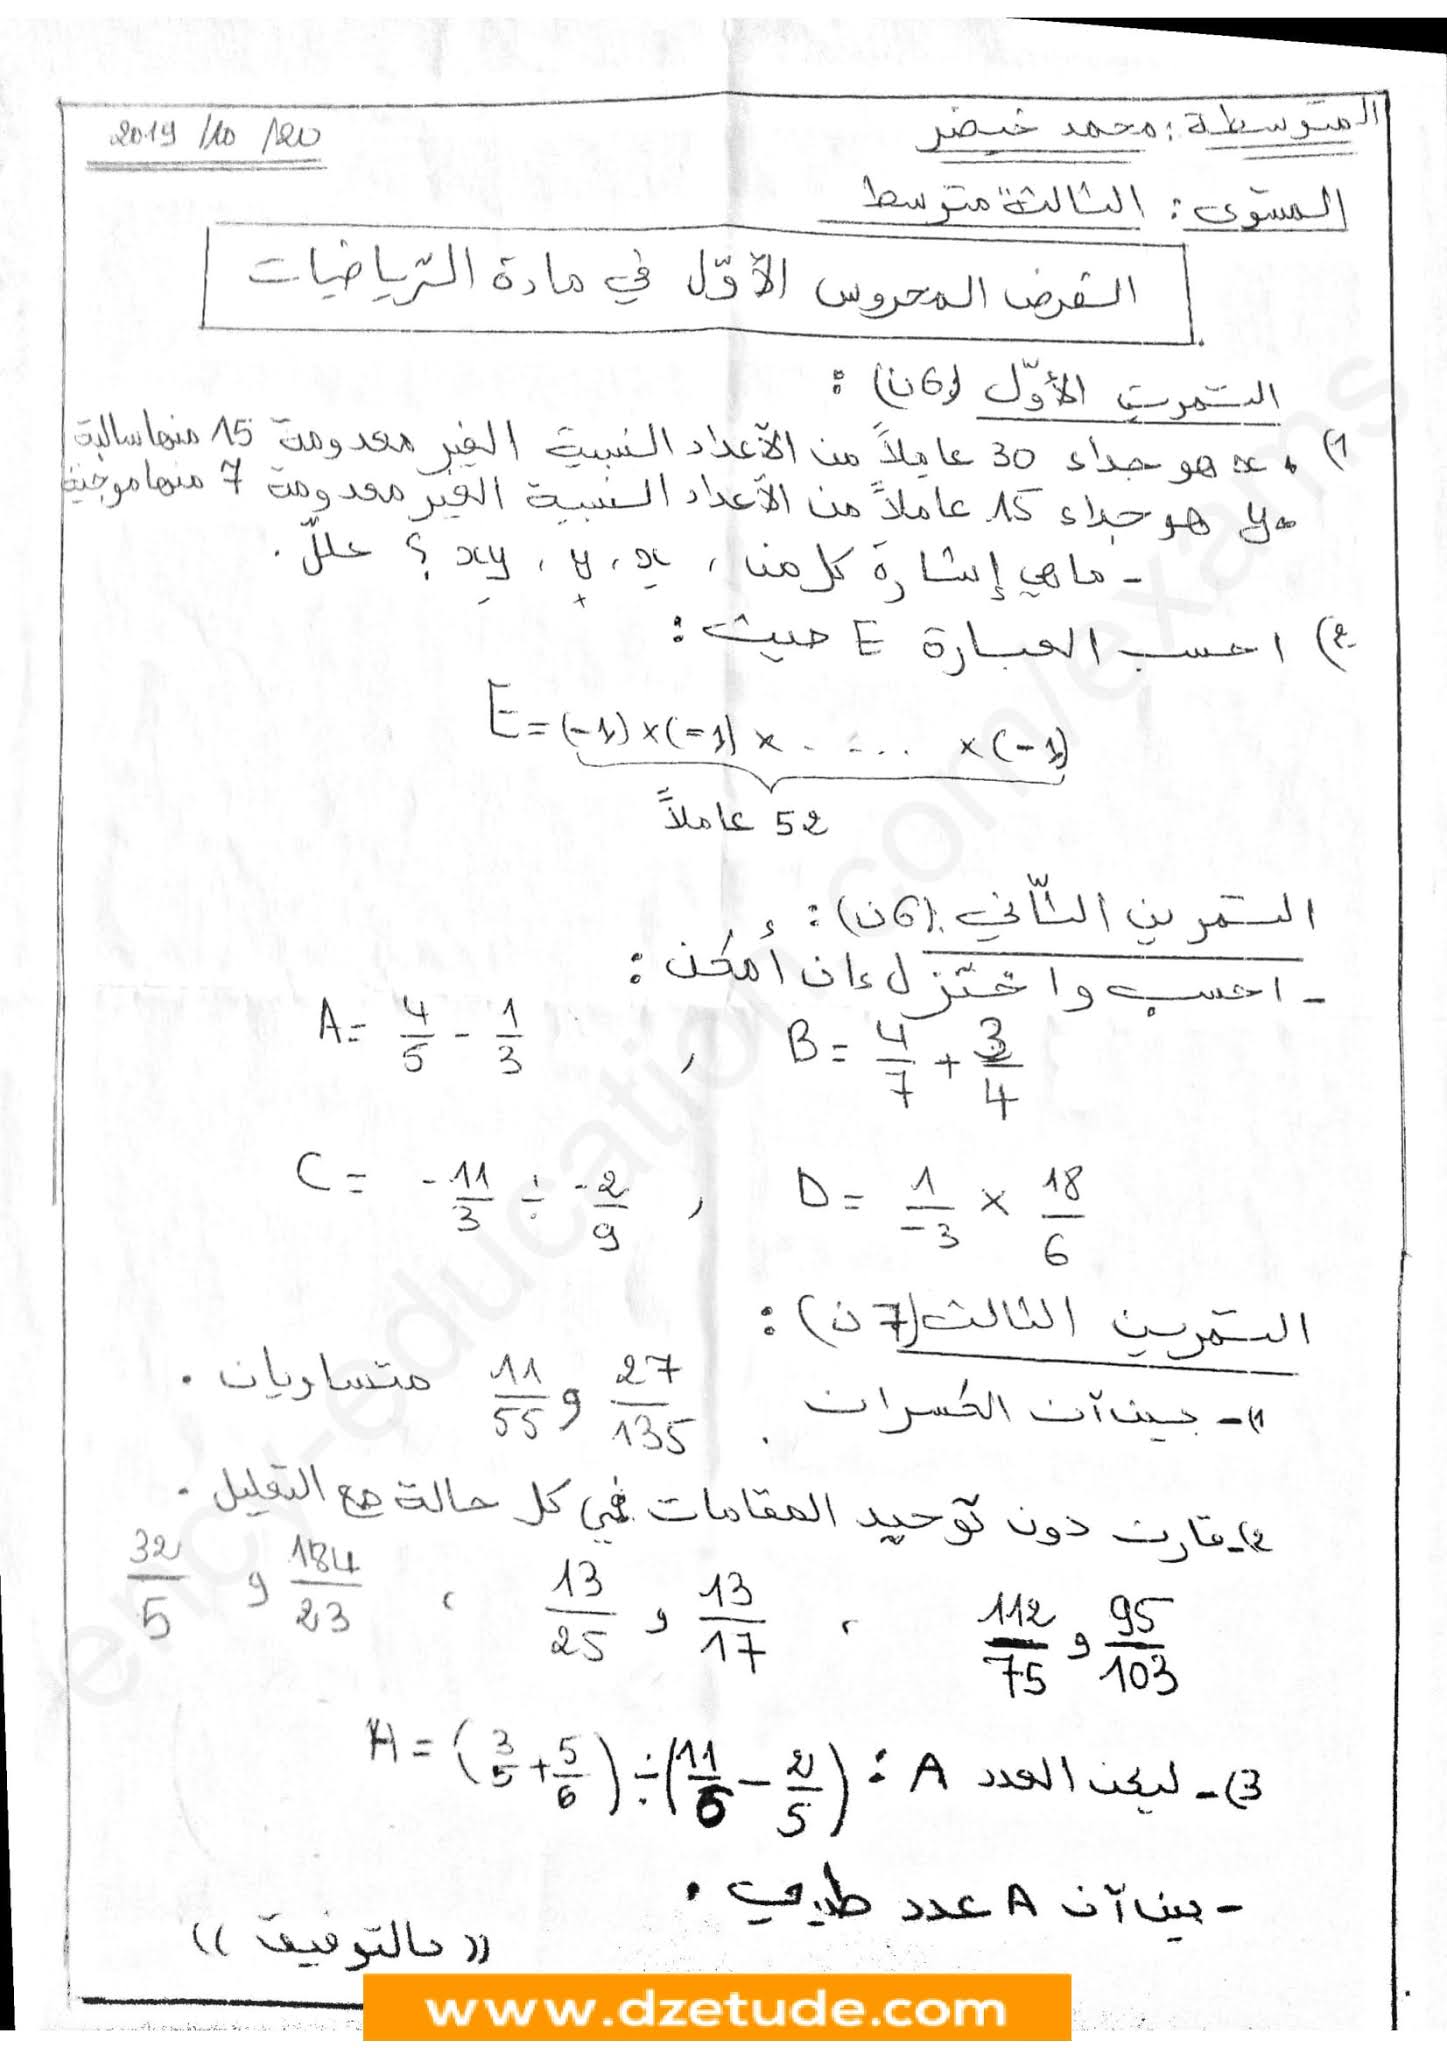 فرض الرياضيات الفصل الأول للسنة الثالثة متوسط - الجيل الثاني نموذج 9